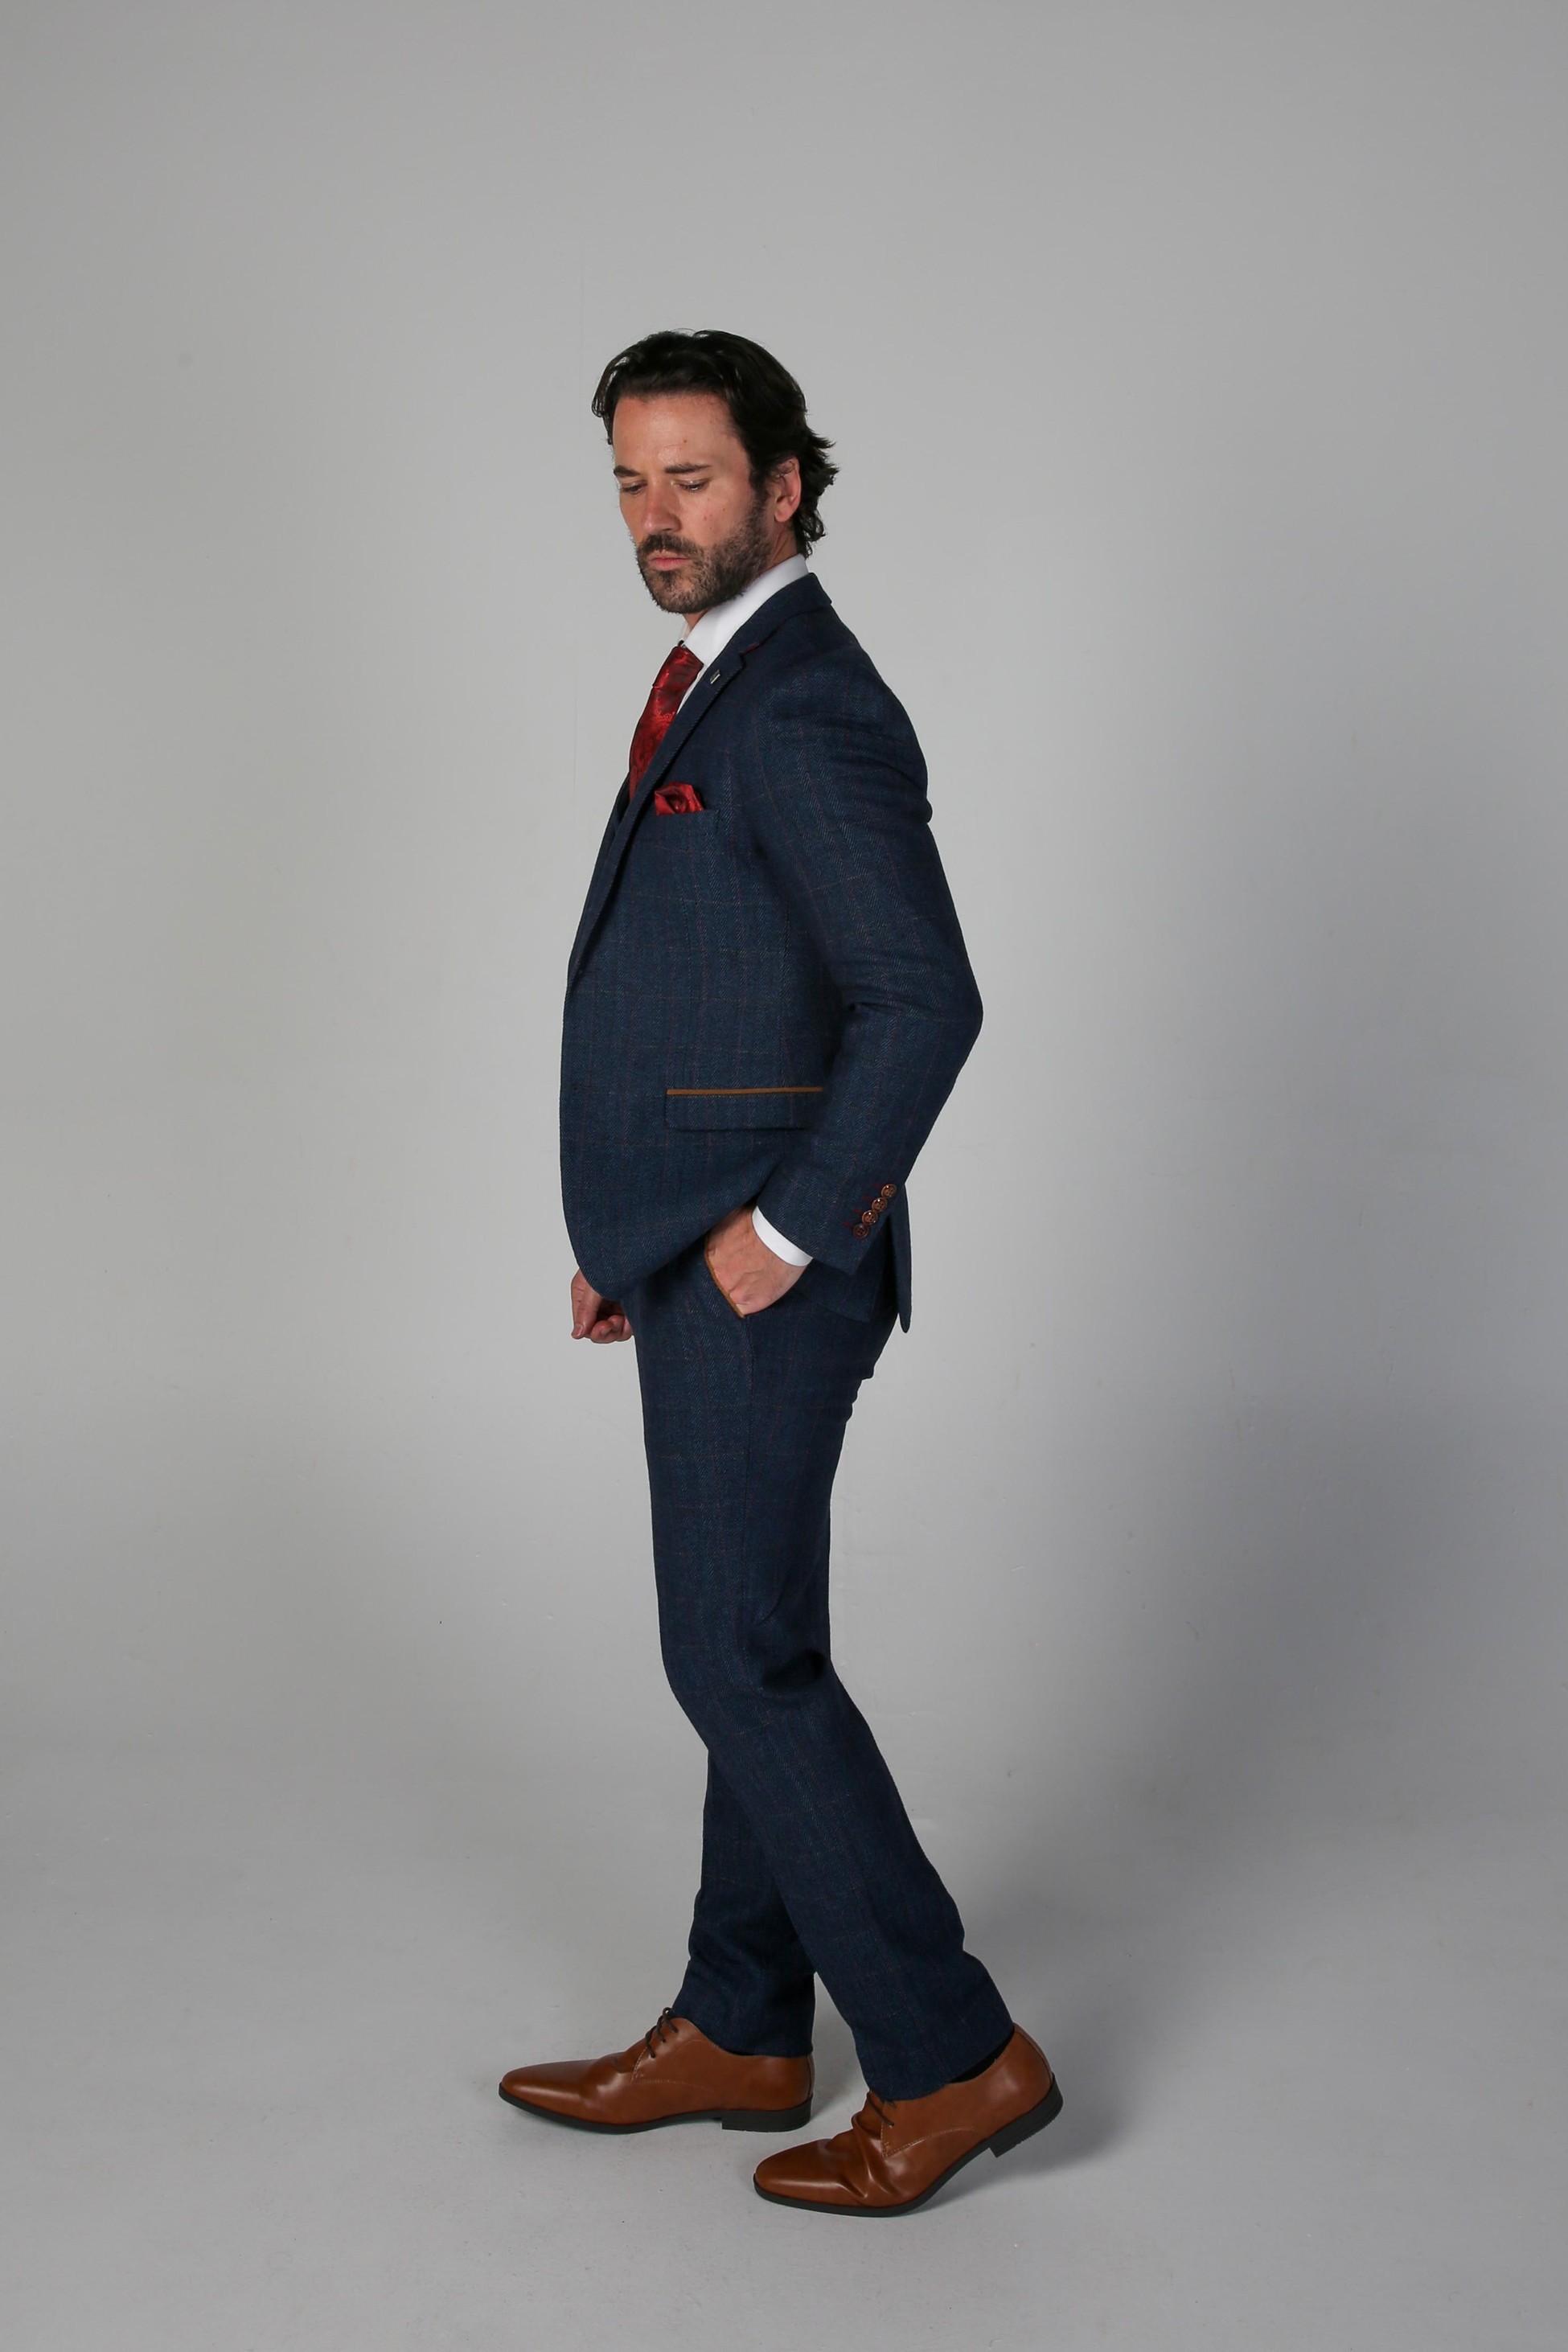 Herren Tweed Herringbone Anzugjacke in Marineblau, Blazer für Hochzeiten und Geschäftsanlässe, Taillierter Schnitt